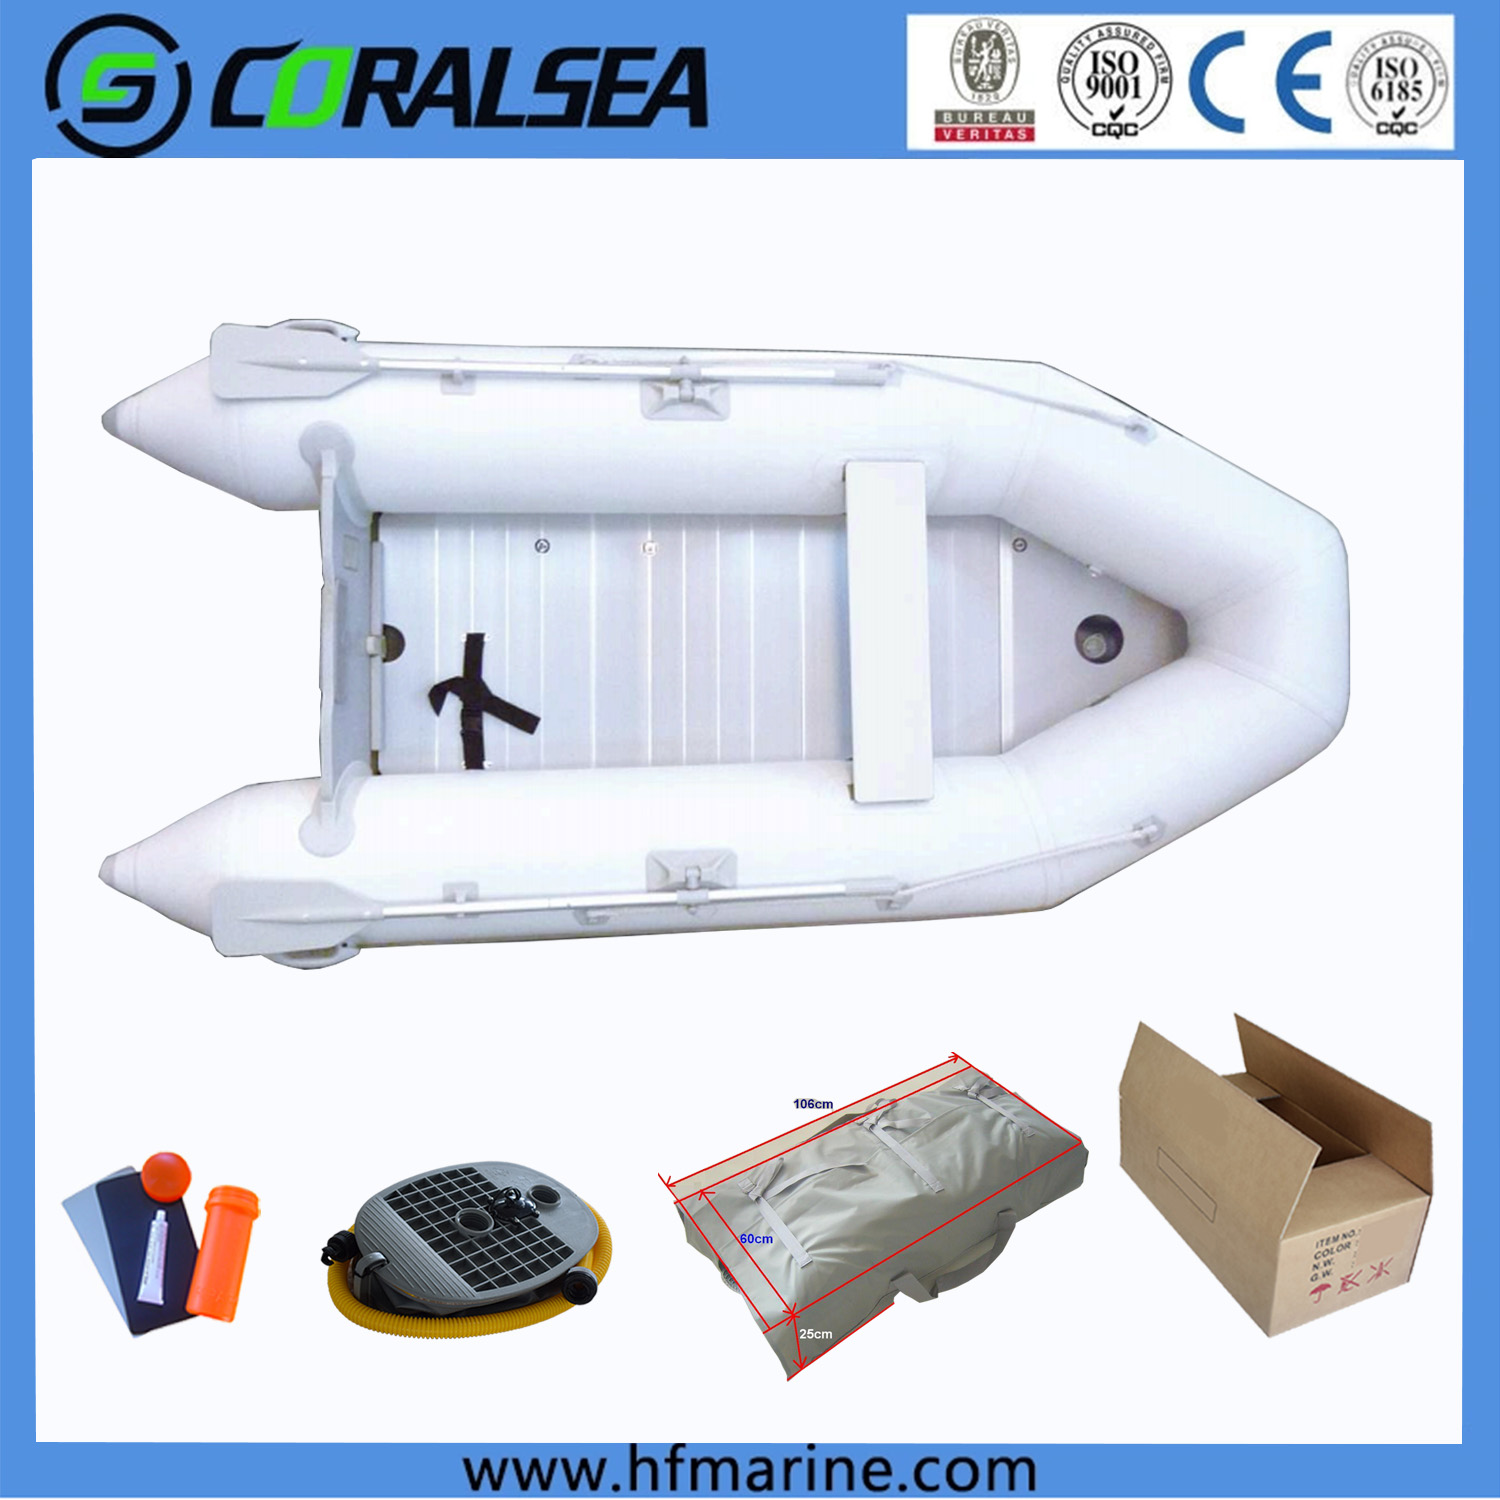 ХСМ – Повољан и практичан склопиви чамац на надувавање за све ваше водене авантуре